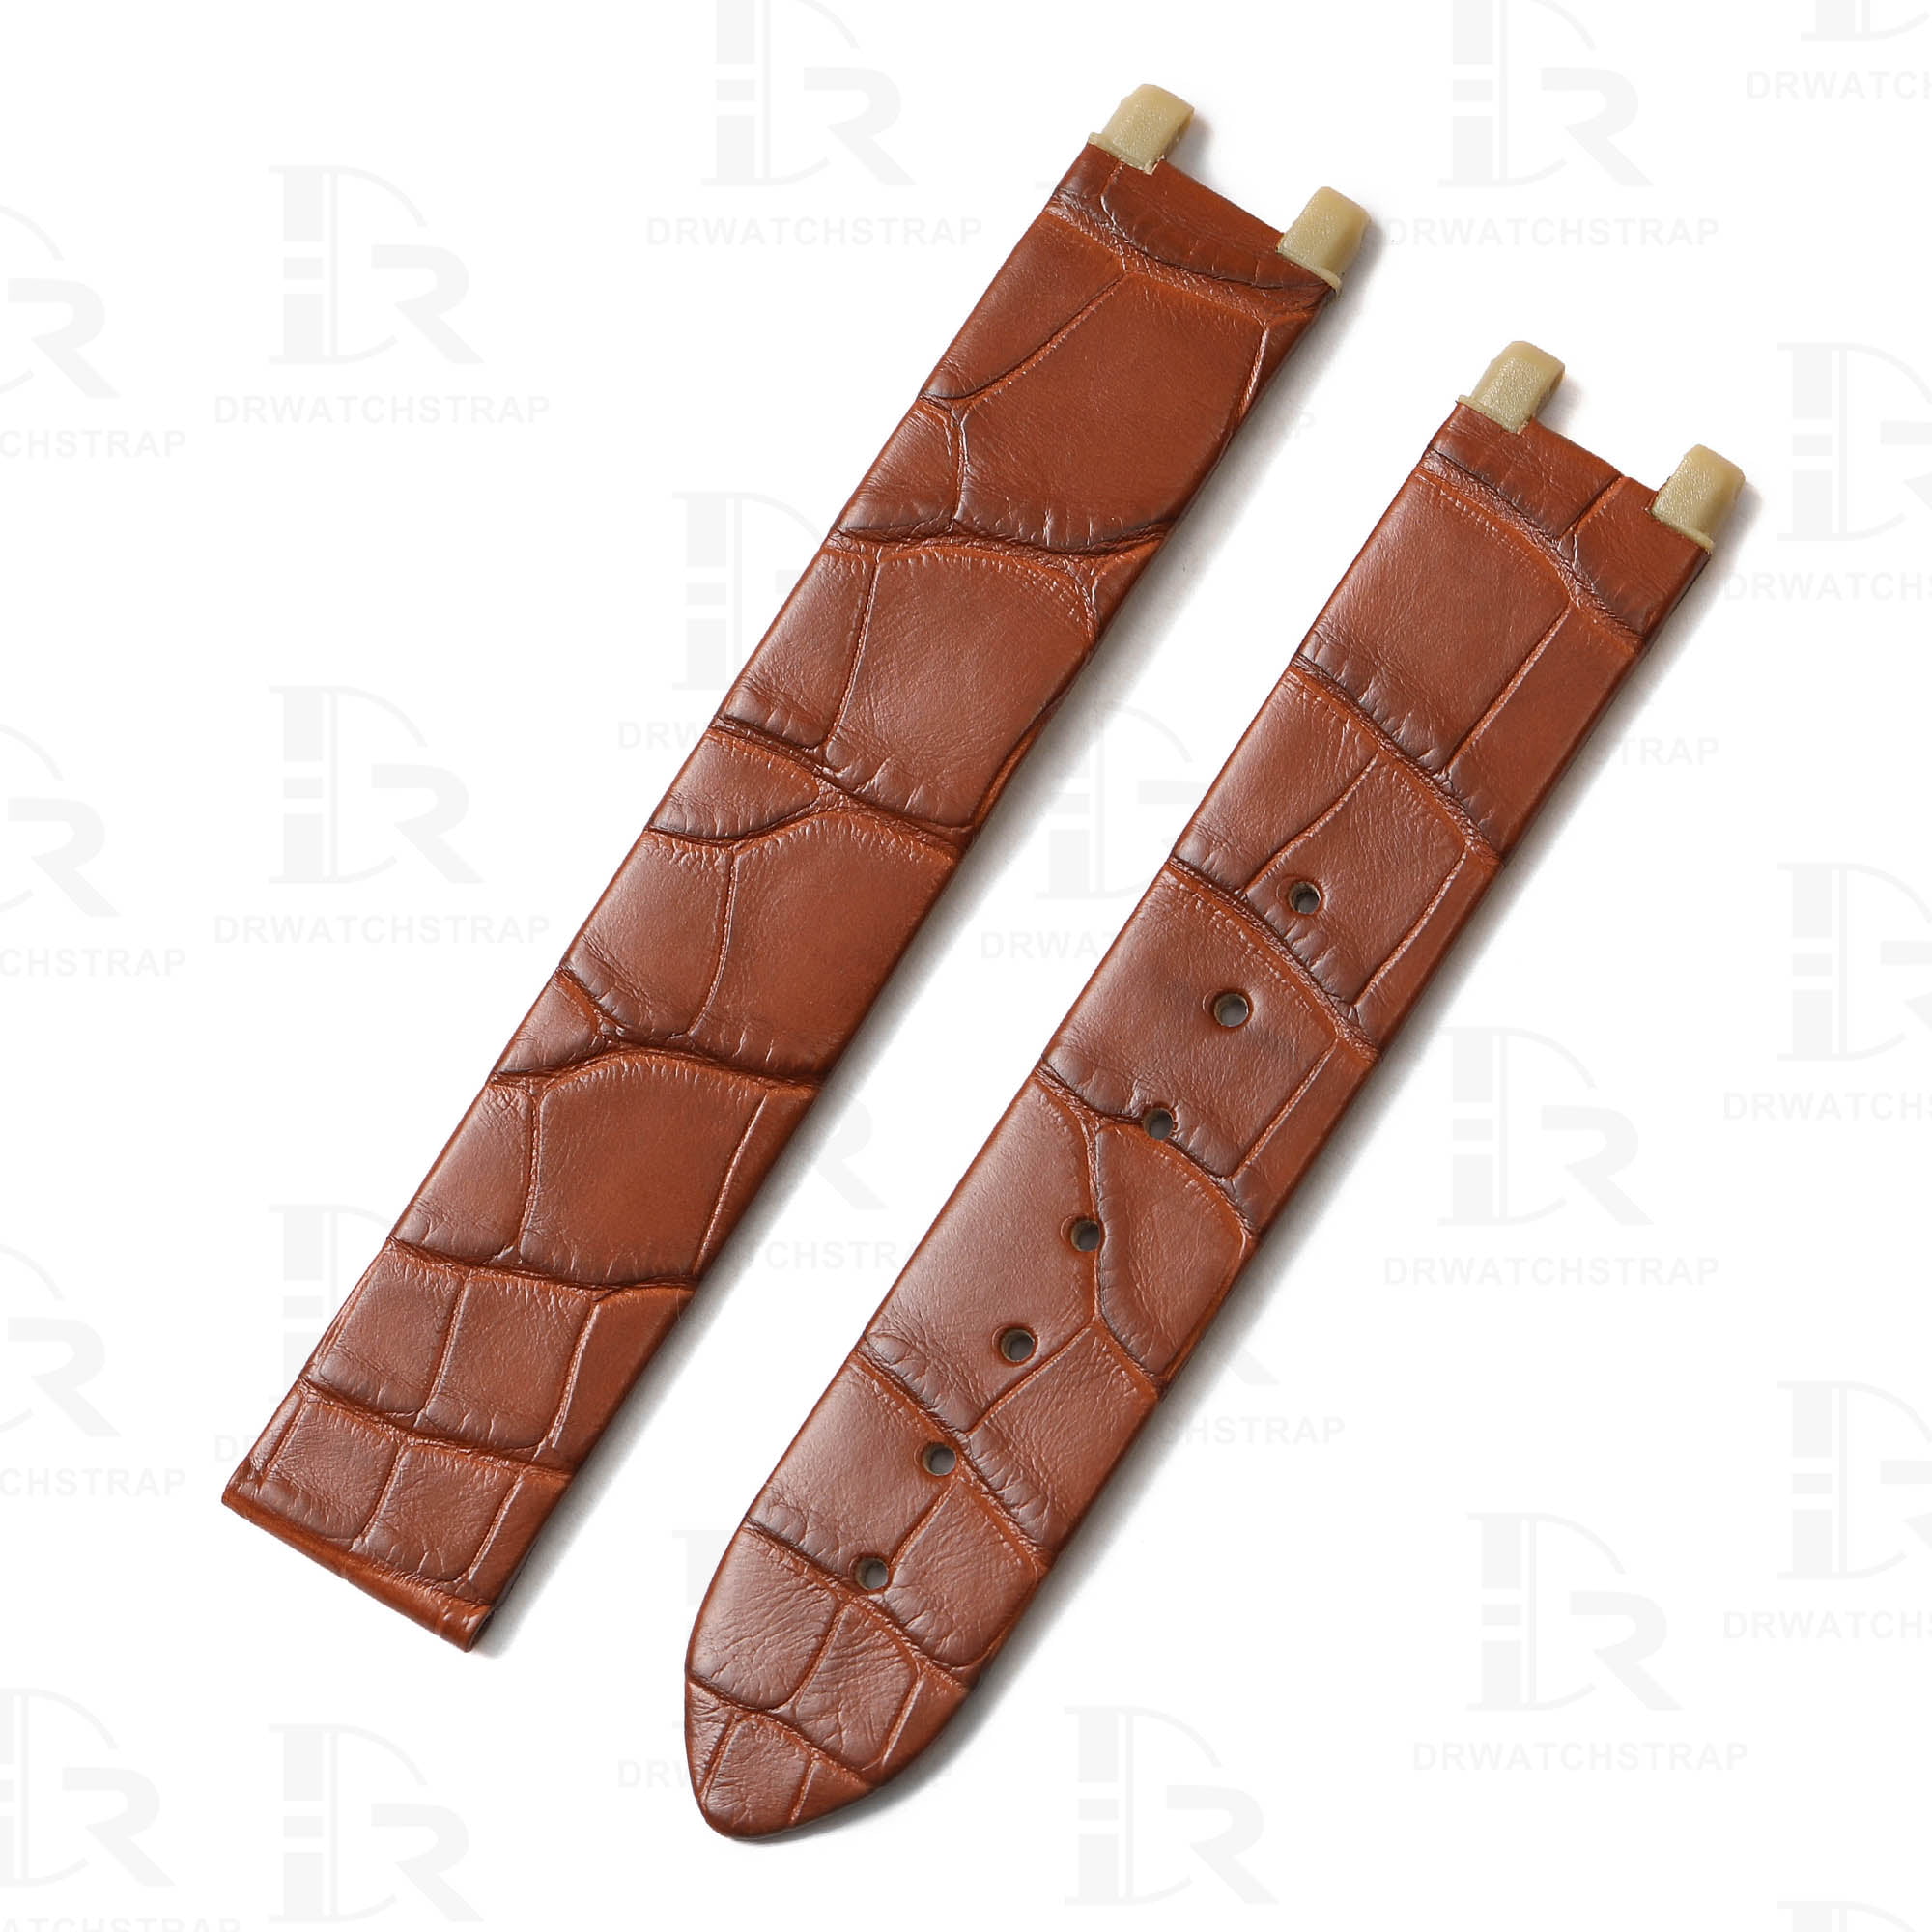 Genuine alligator leather watch band for Omega De Ville